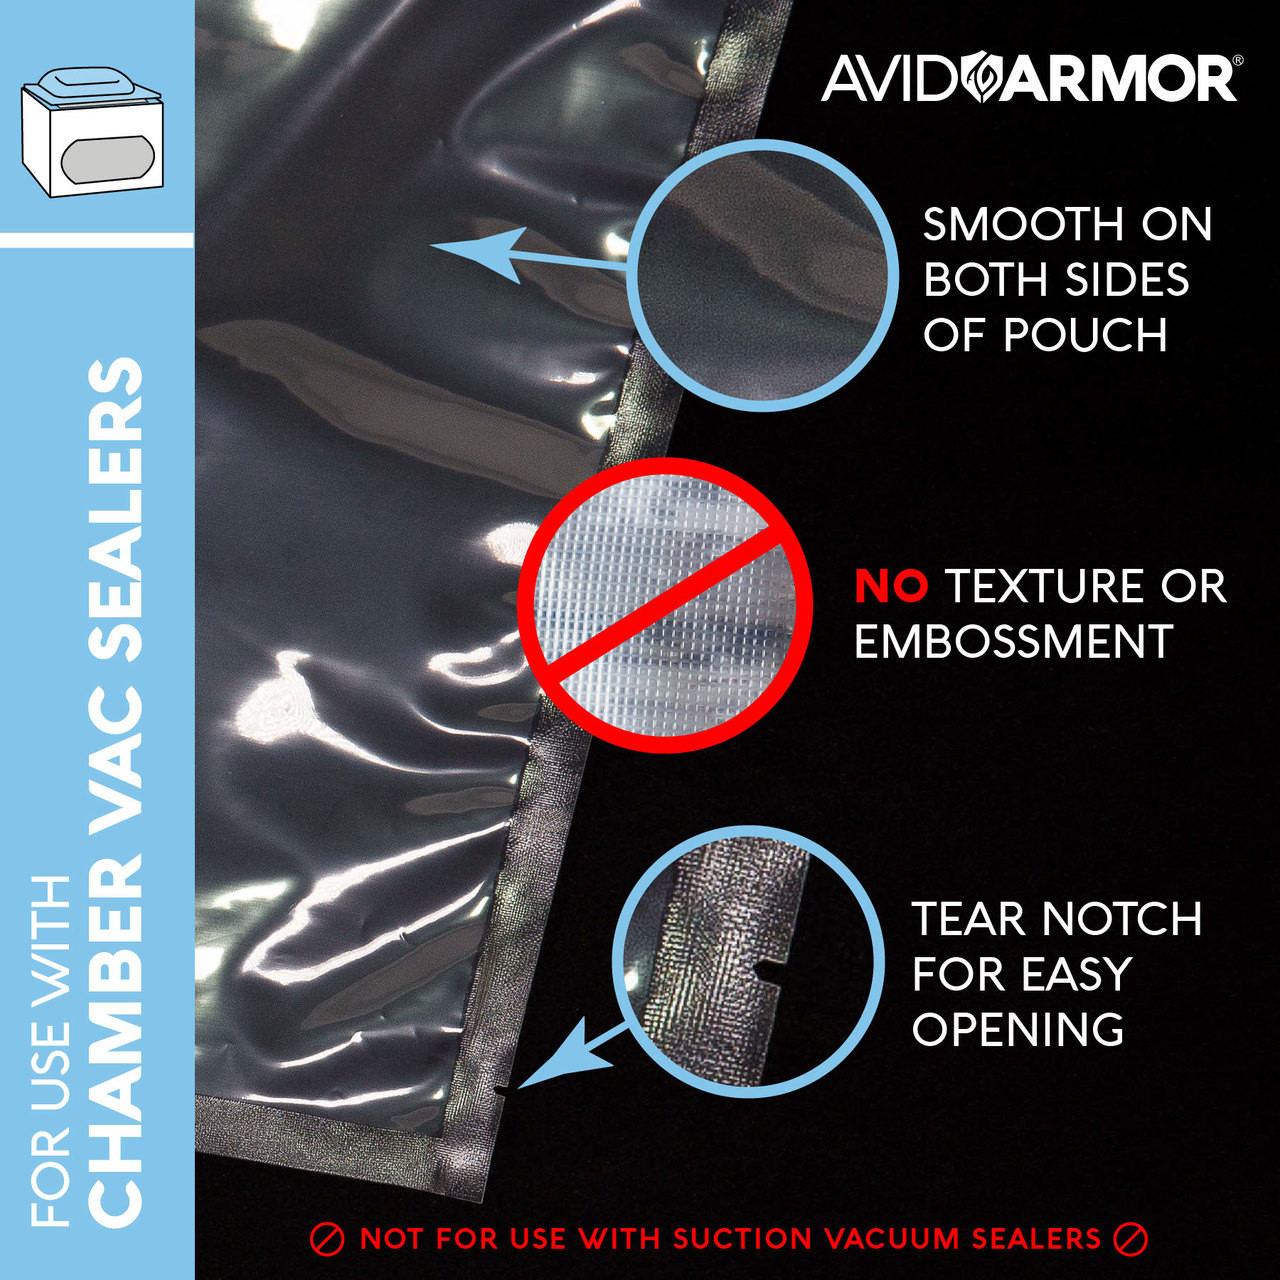  Avid Armor - Vacuum Sealer Bags, Vac Seal Bags for